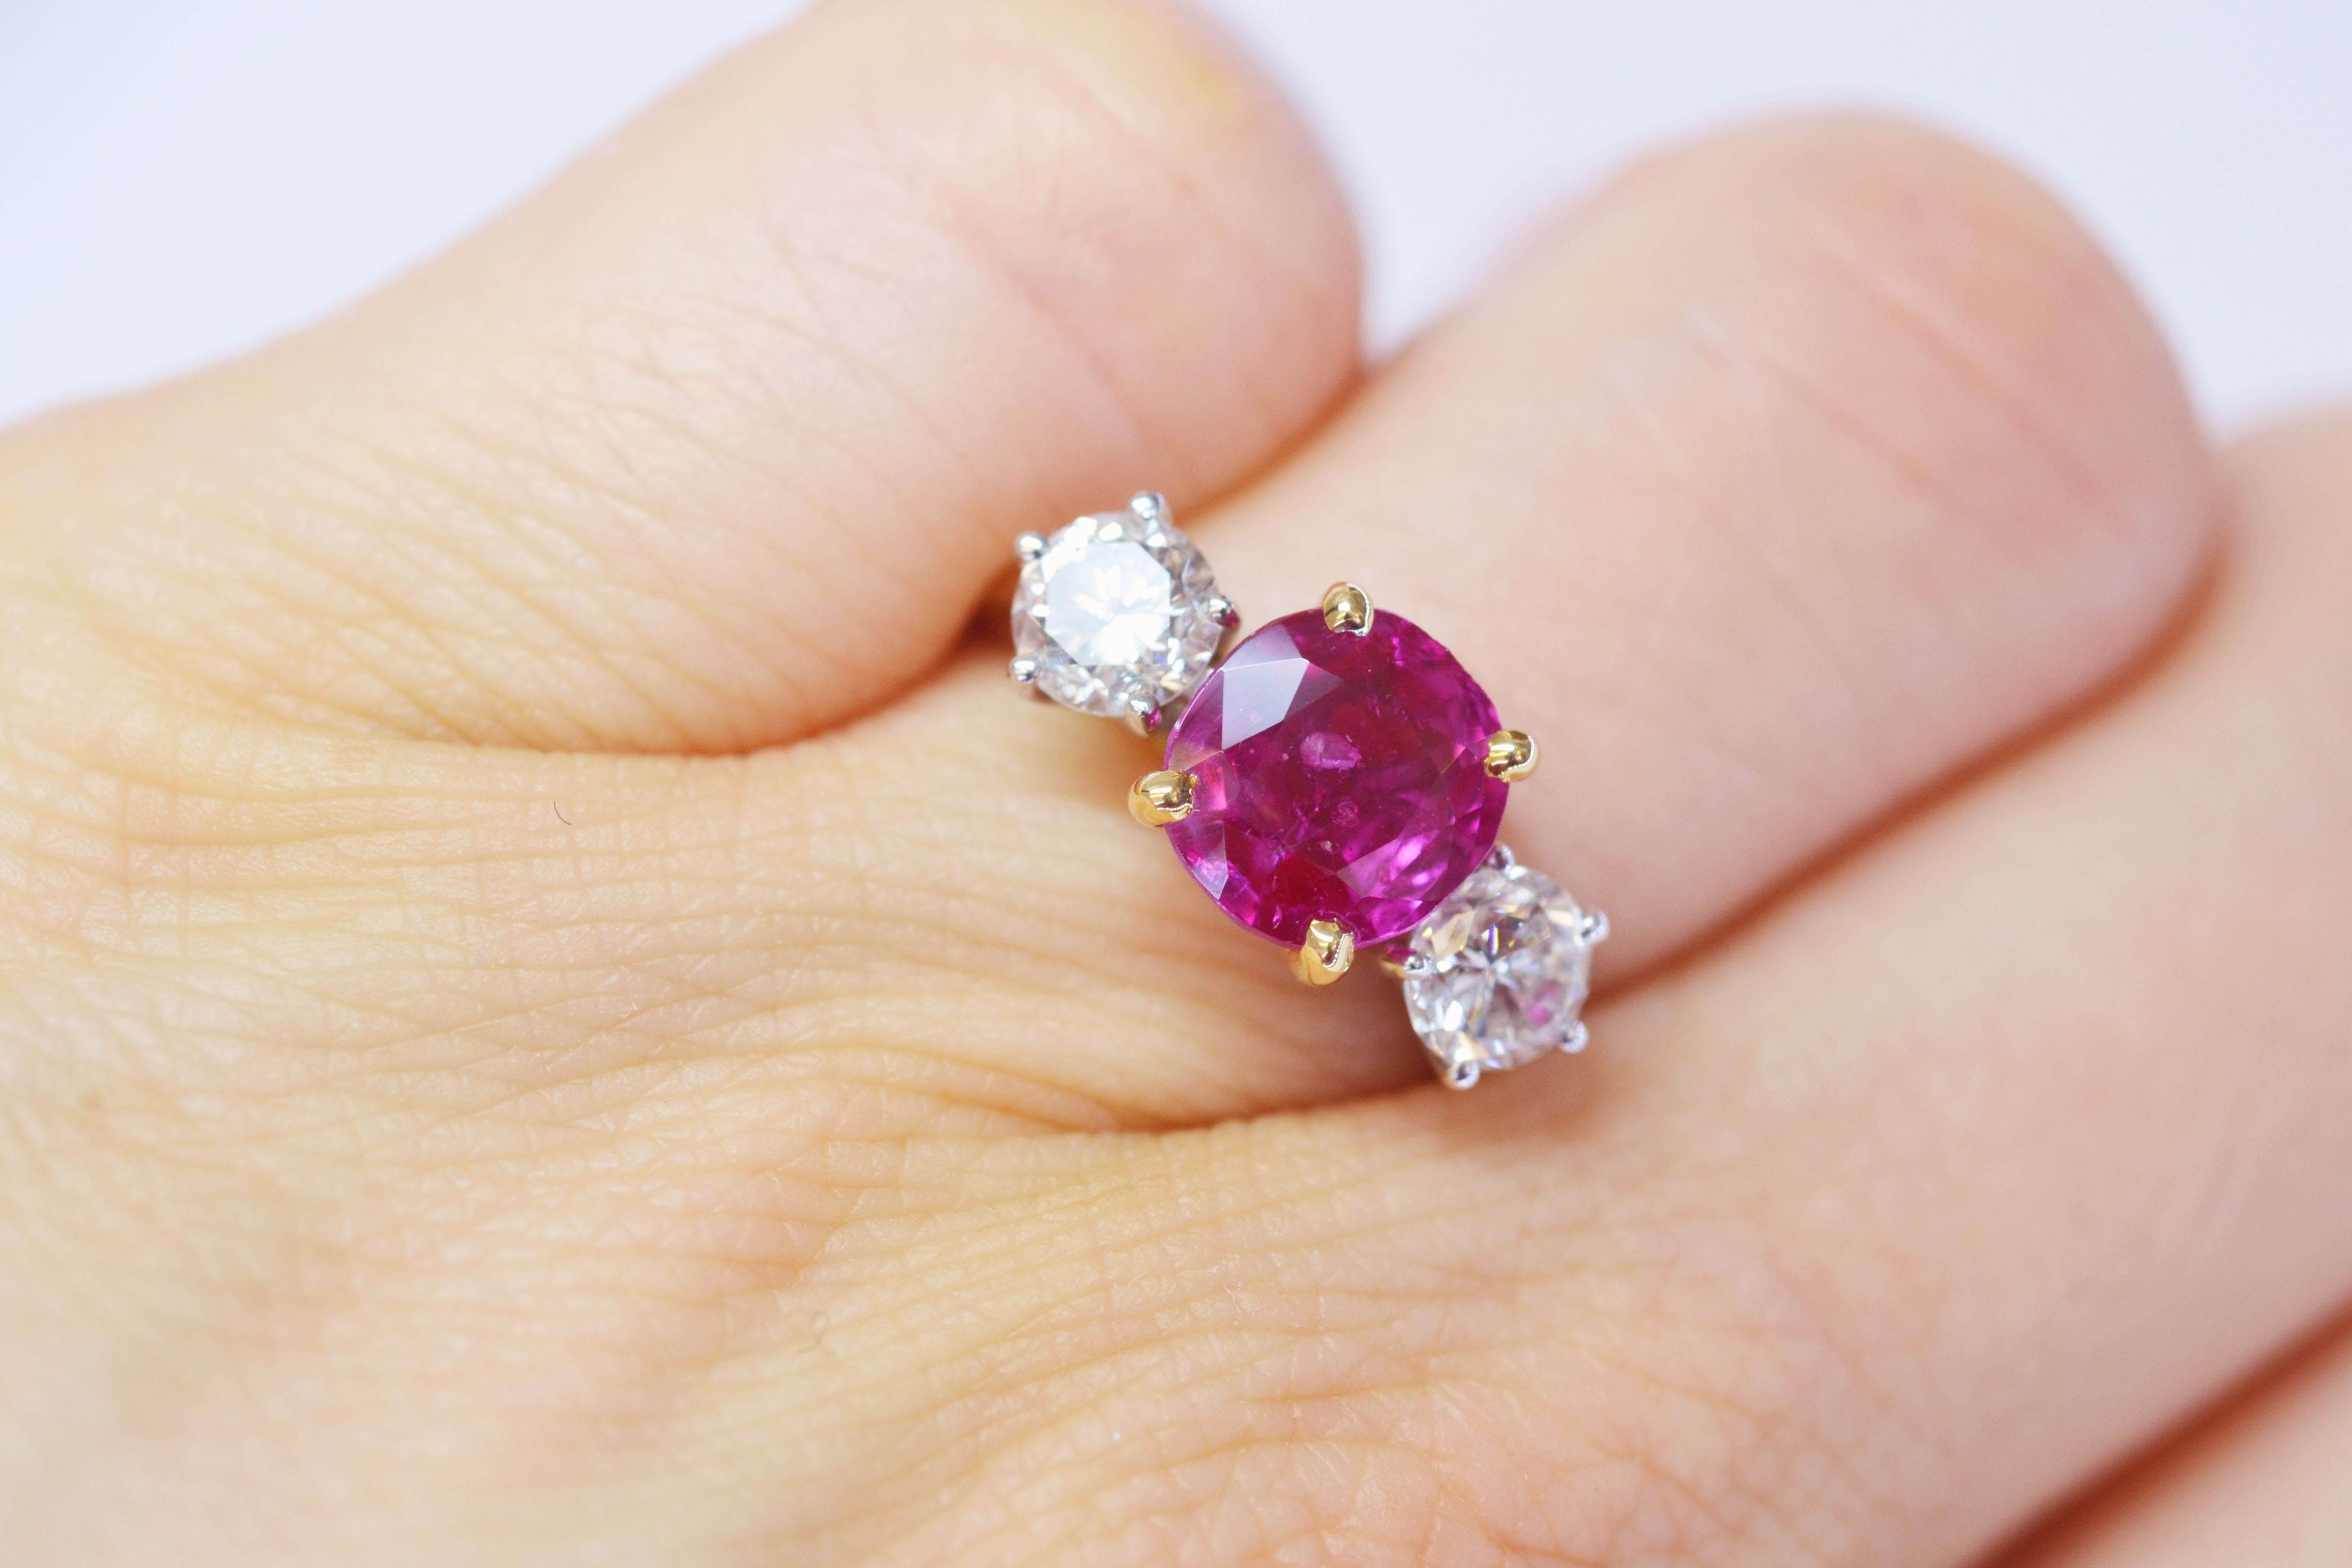 Handgefertigter Ring aus 18 Karat Gelbgold mit einem leuchtenden 2,50-Karat-Himbeer-Rubin zwischen zwei glitzernden Diamanten. Dieser Ring hat eine offene Korbfassung, die das Licht aus jedem Winkel durchlässt und die Schönheit der drei Steine zur